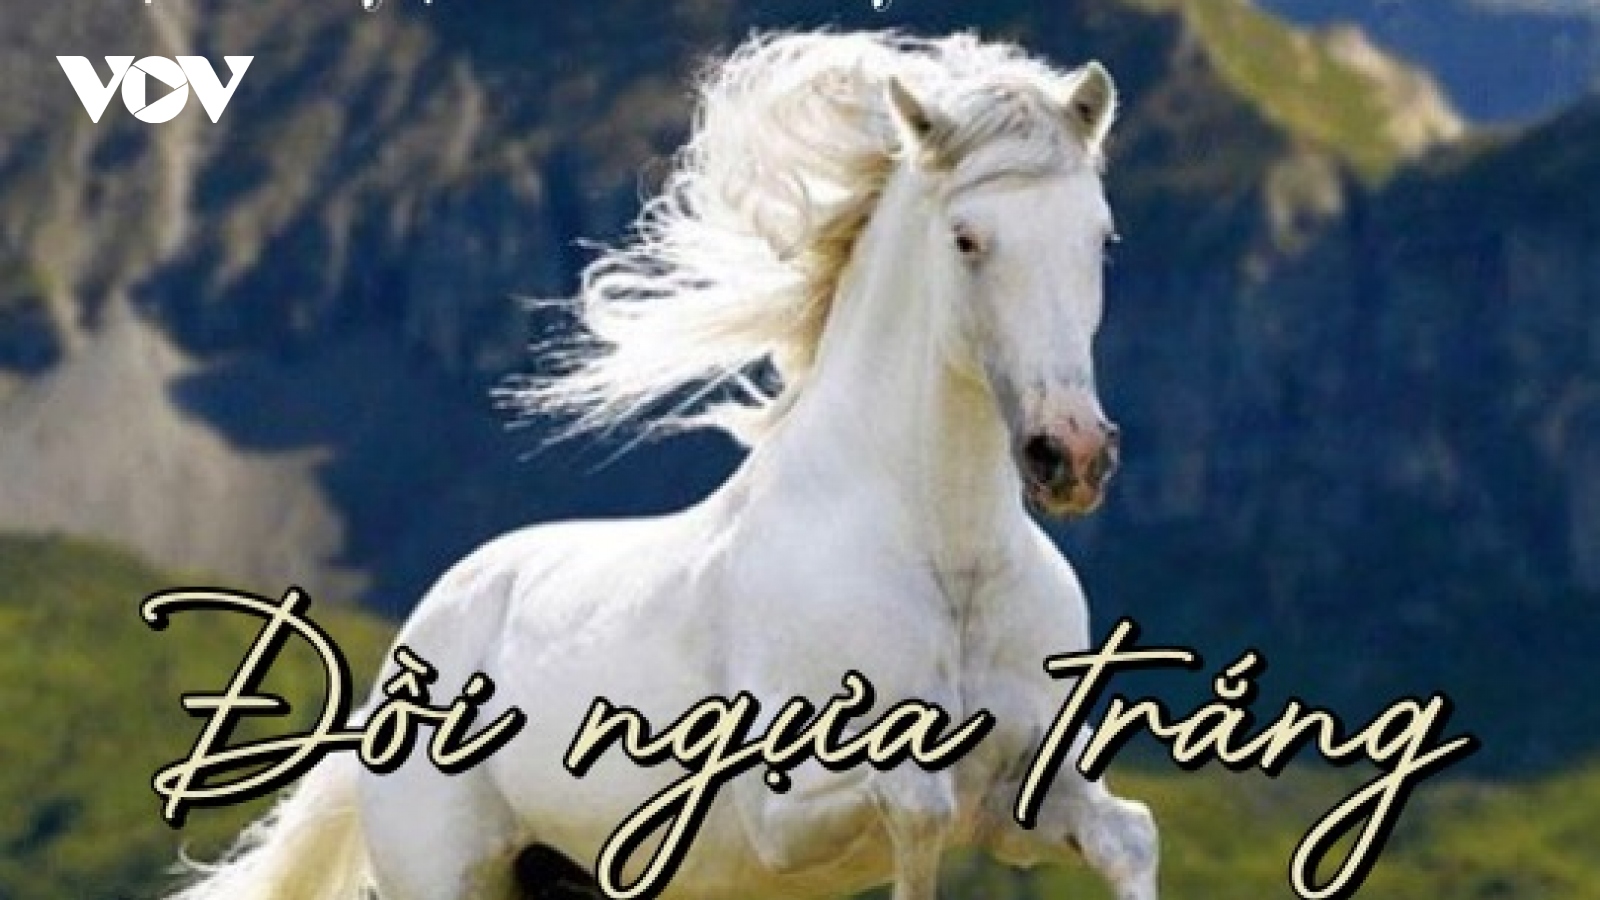 "Đồi ngựa trắng" - truyện ngắn hay của Nguyễn Quang Thiều